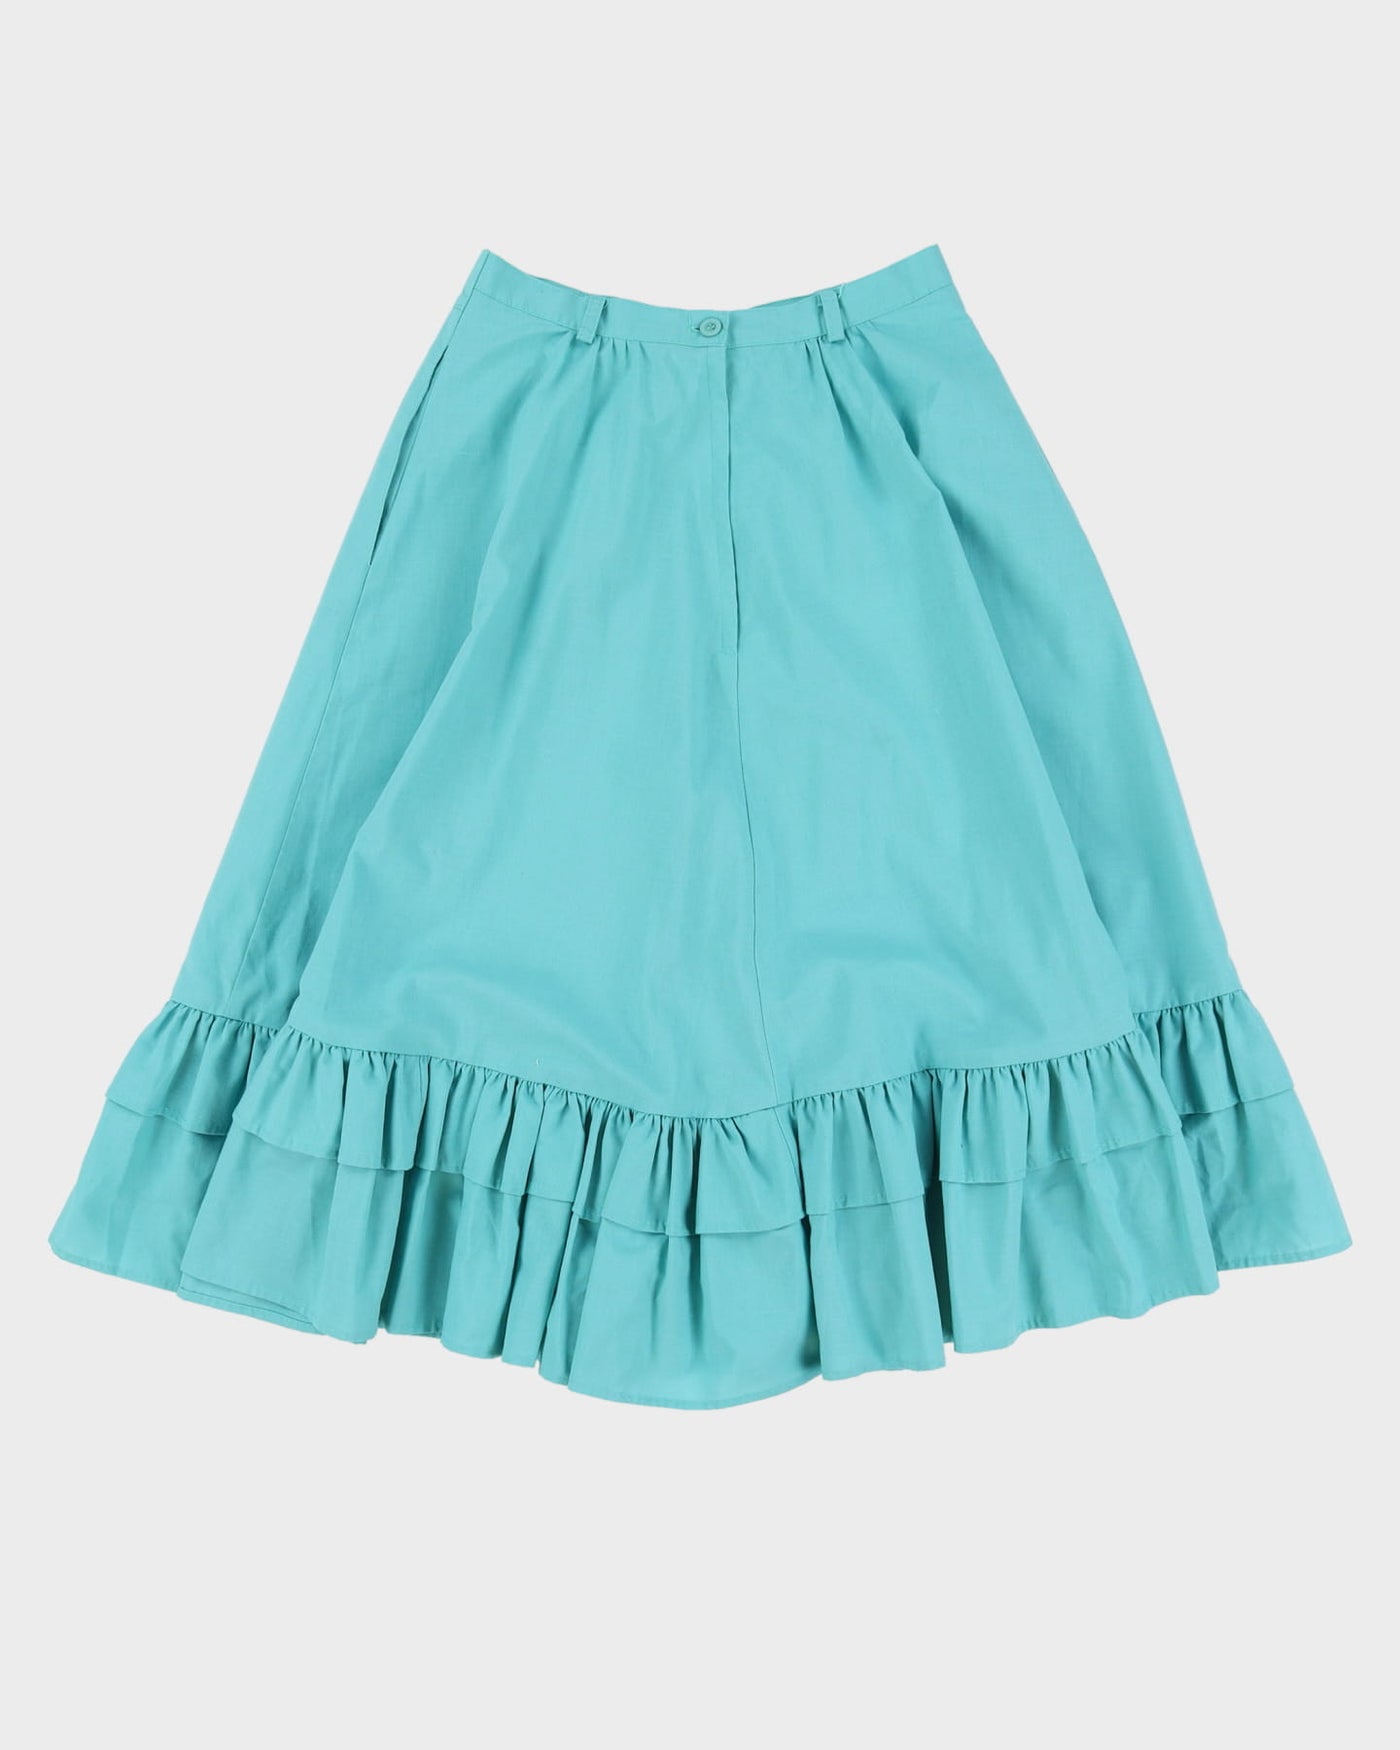 Vintage 1990s Blue Swing Skirt - S